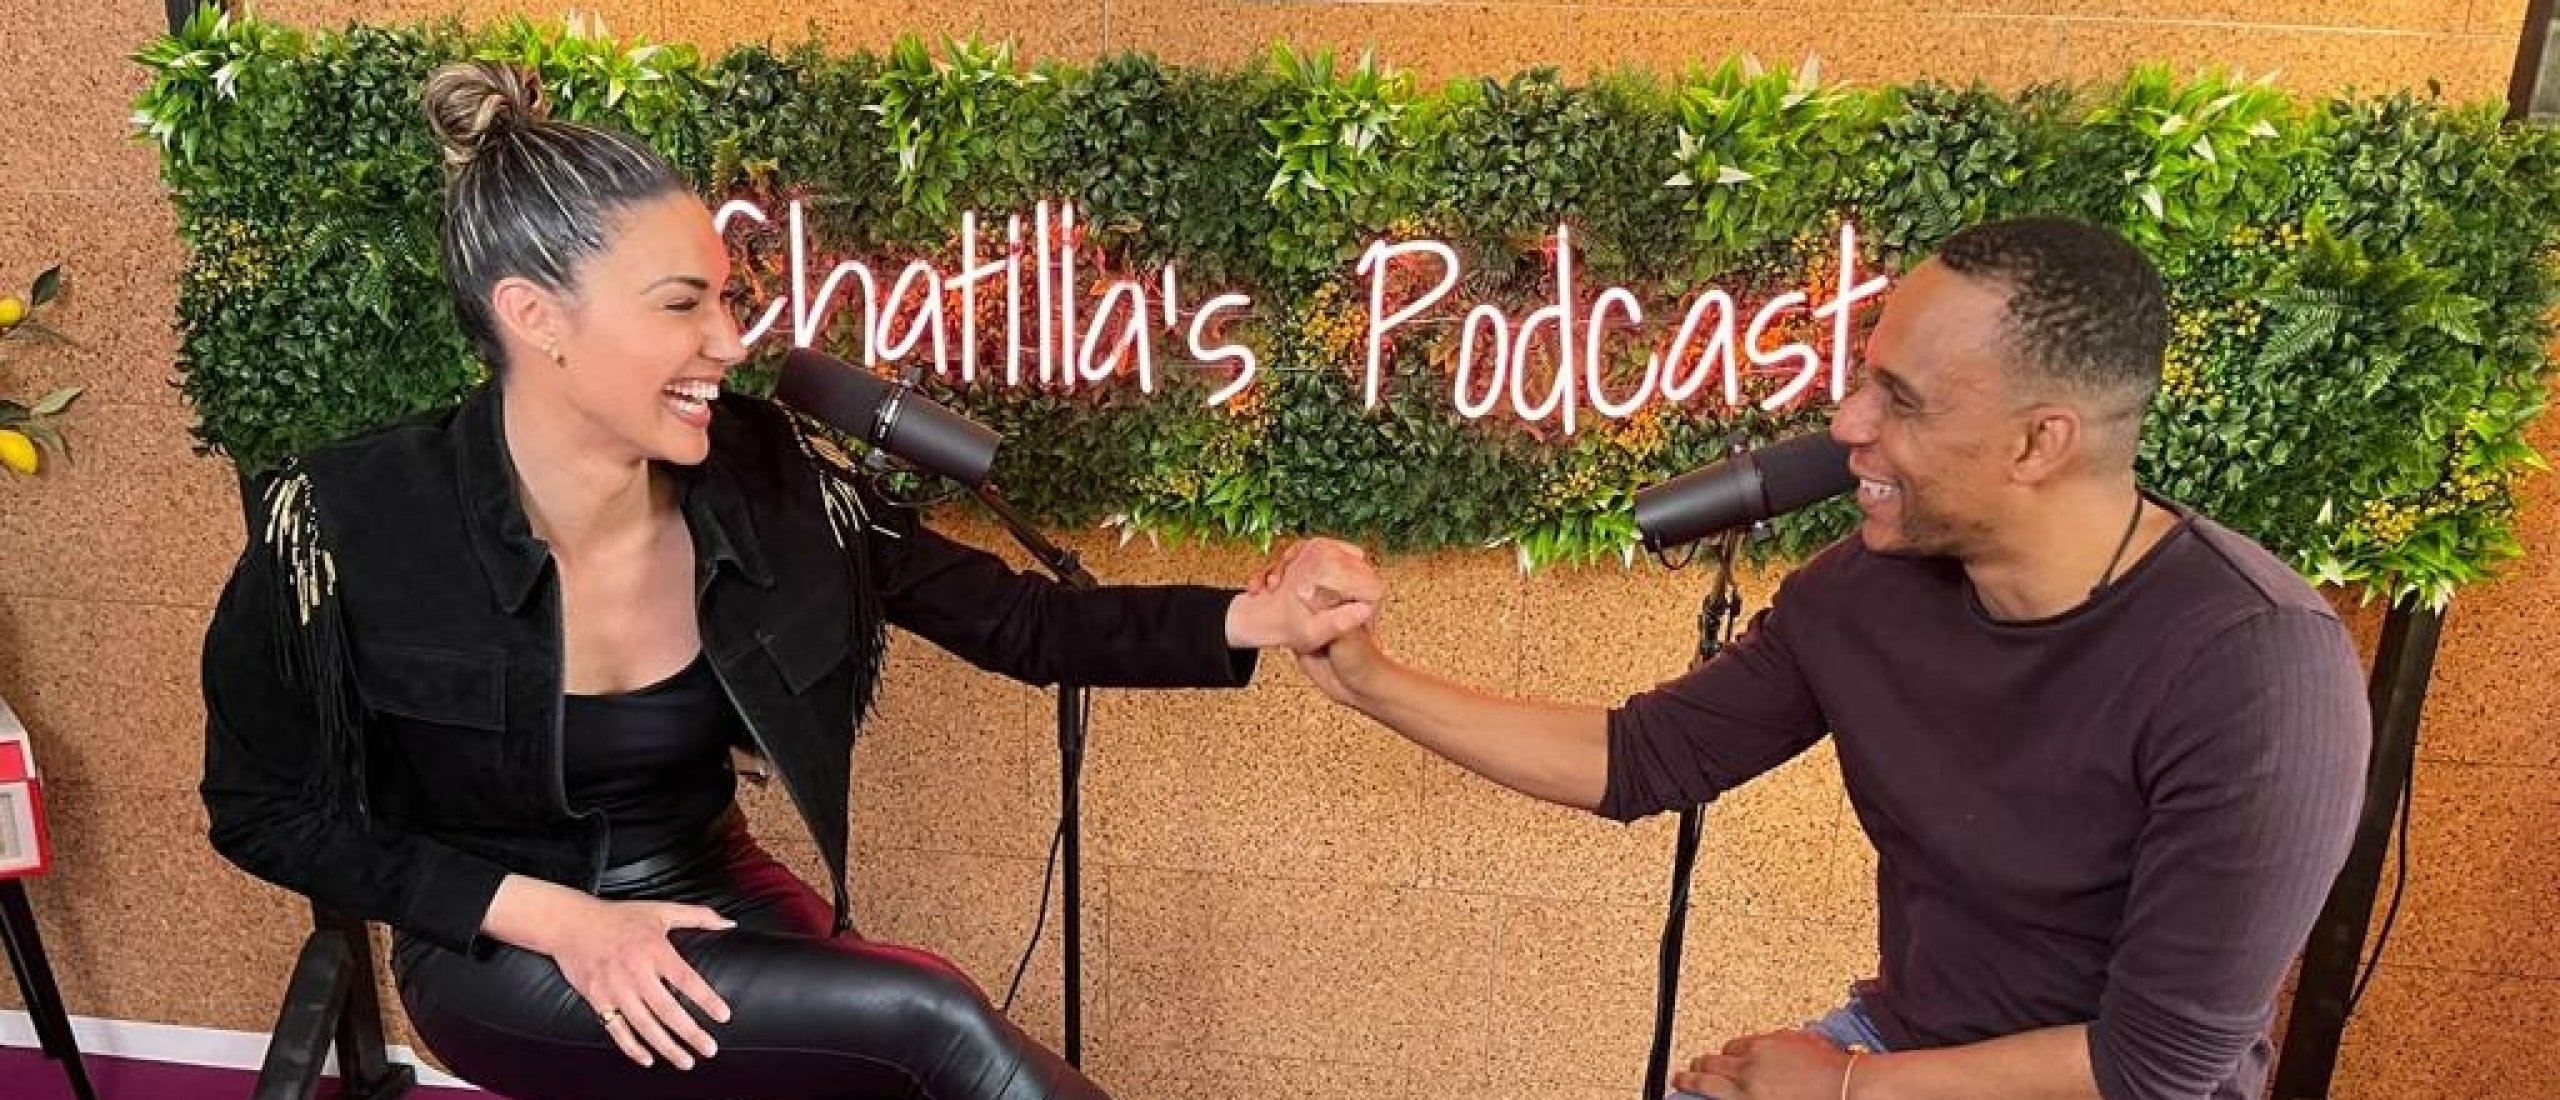 Chatilla's Podcast - Wensly Francisco met Zijn Levensverhaal Van Een Leven in een Achterstandswijk Naar Succesvolle Auteur, Documentairemaker & Producer